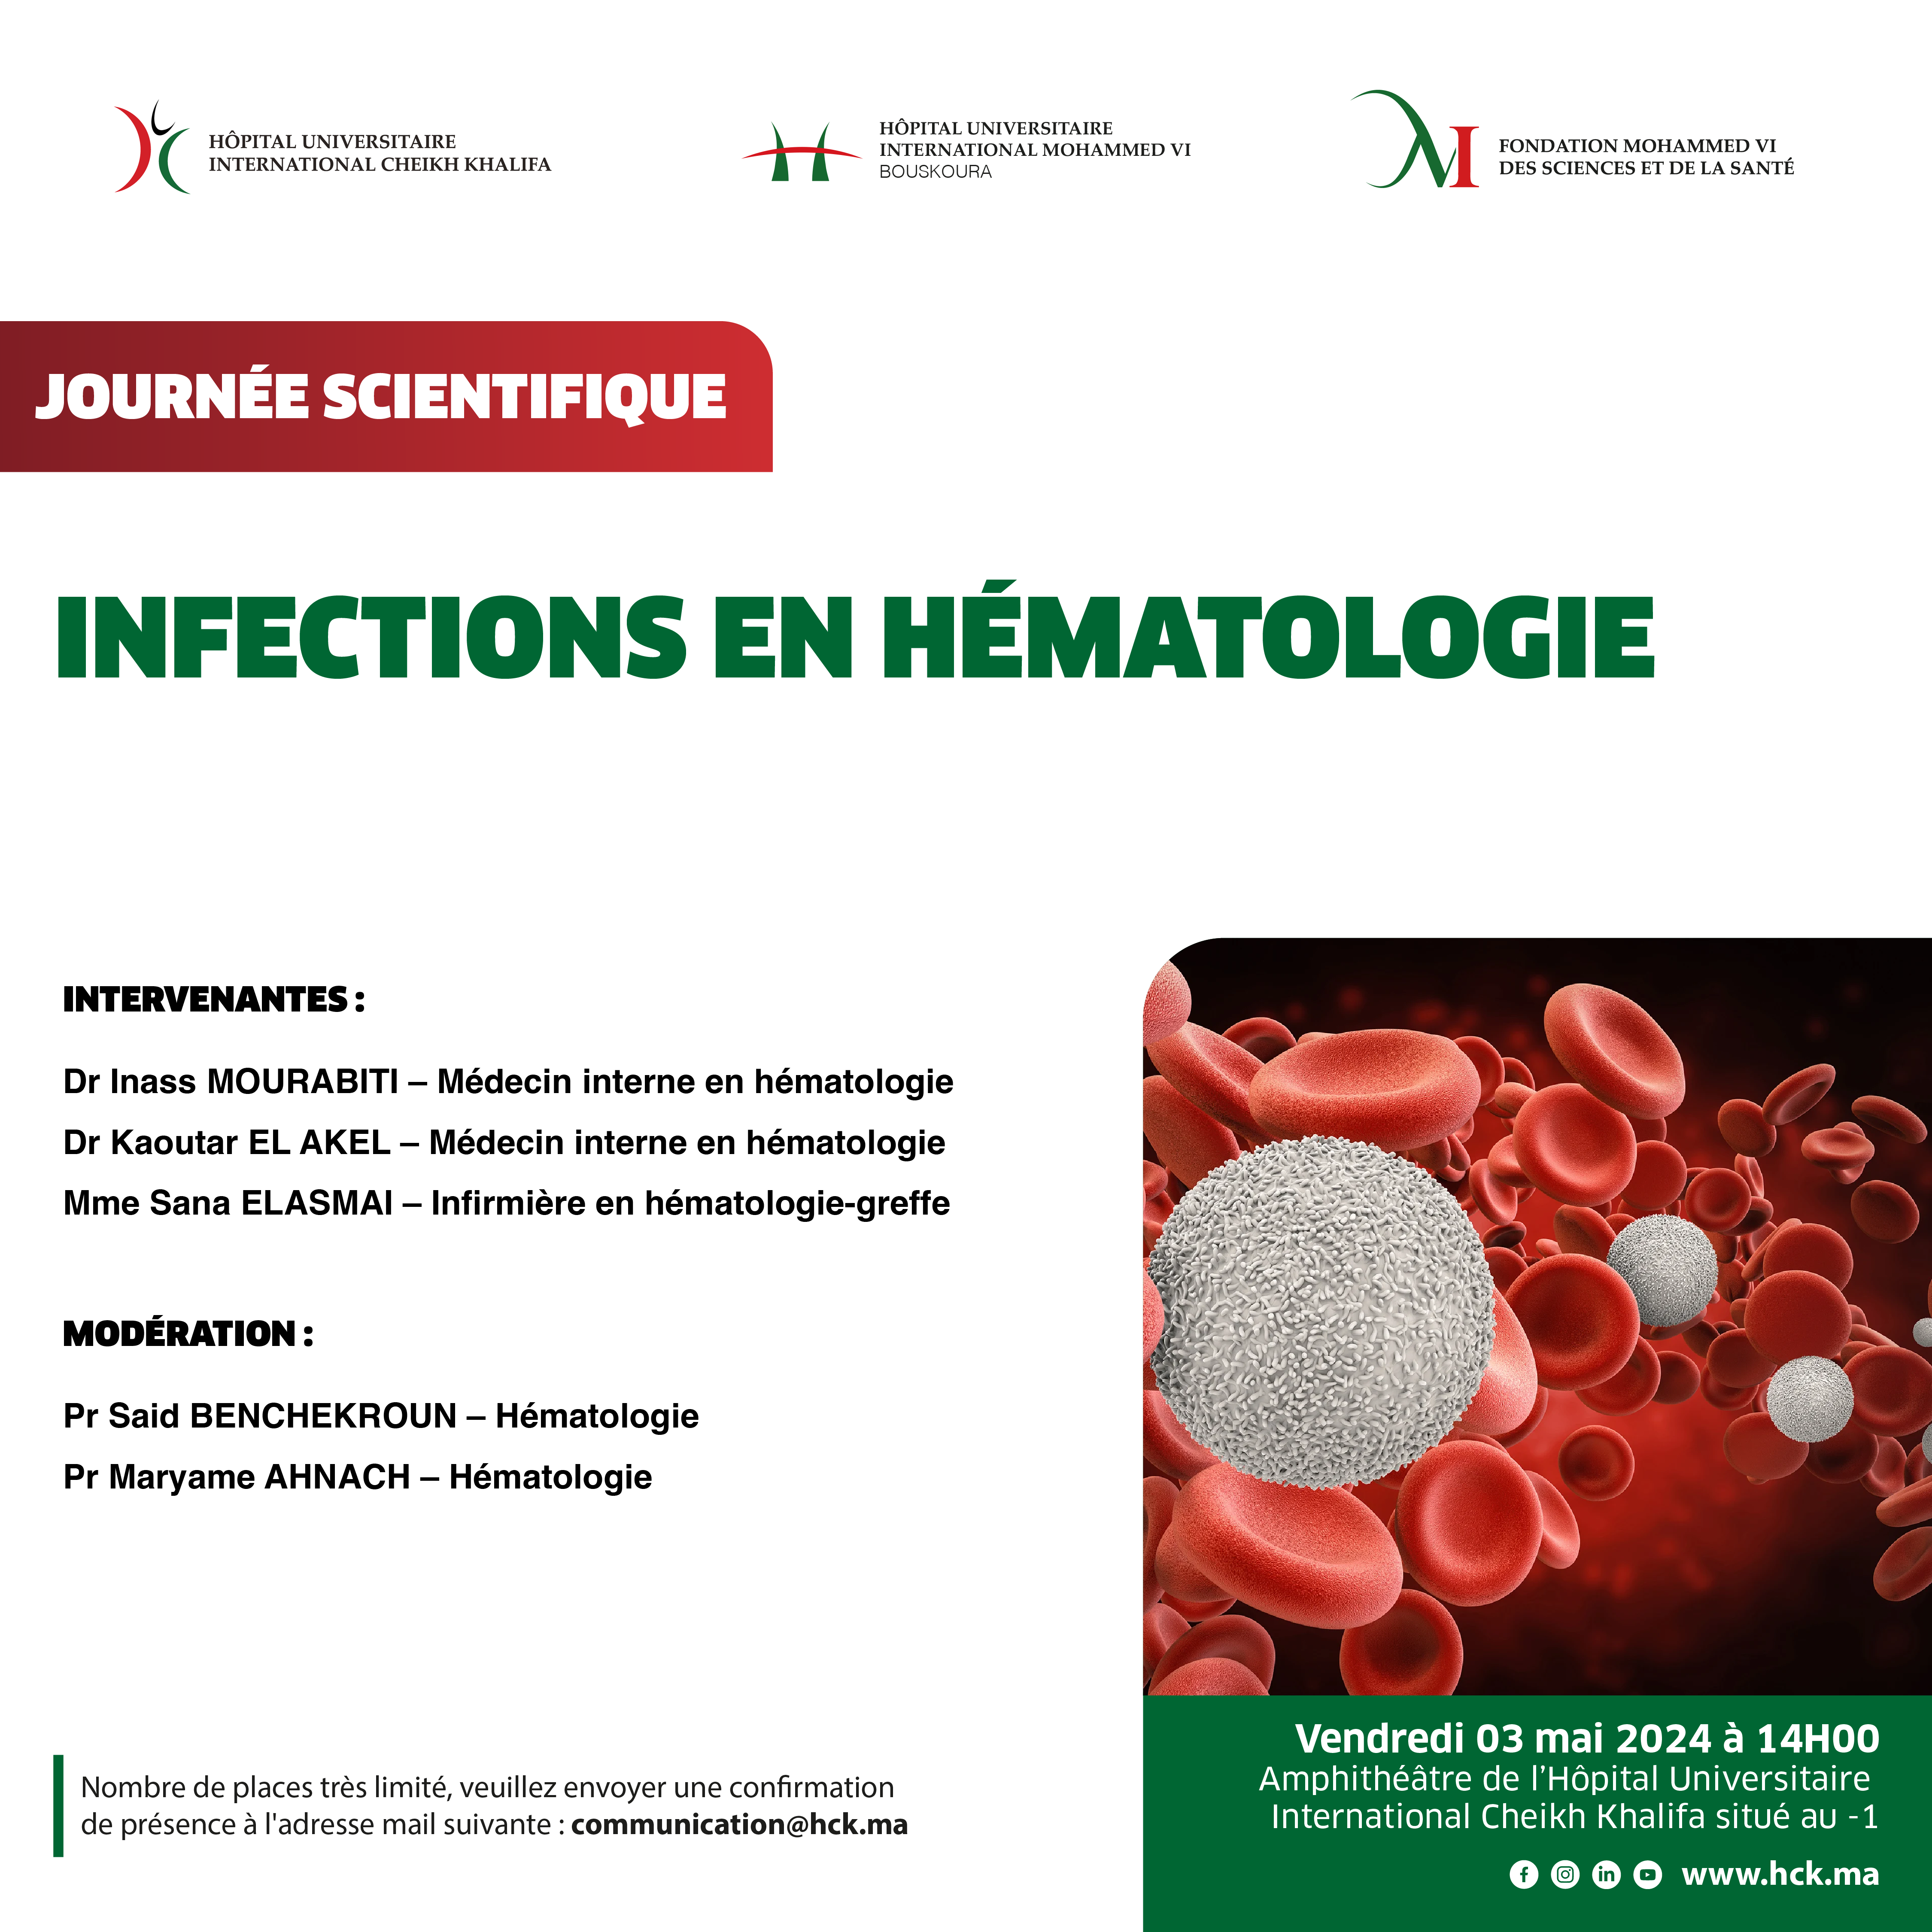 JOUNRÉE SCIENTIFIQUE : LES INFECTIONS EN HÉMATOLOGIE